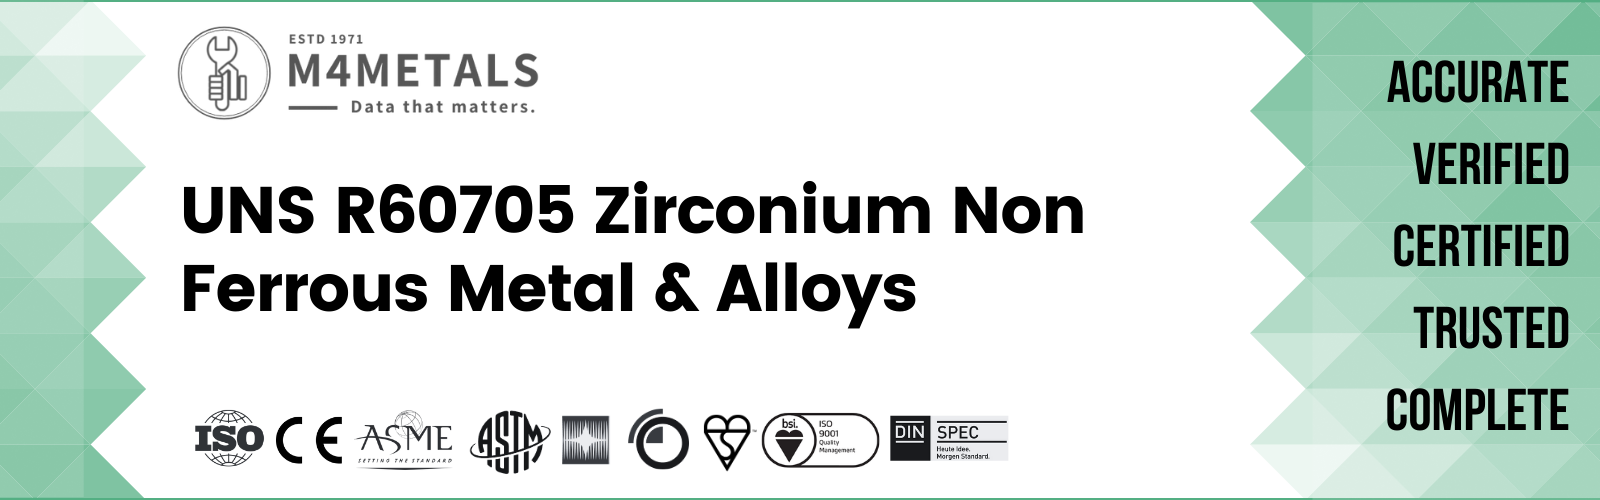 Zirconium UNS R60705